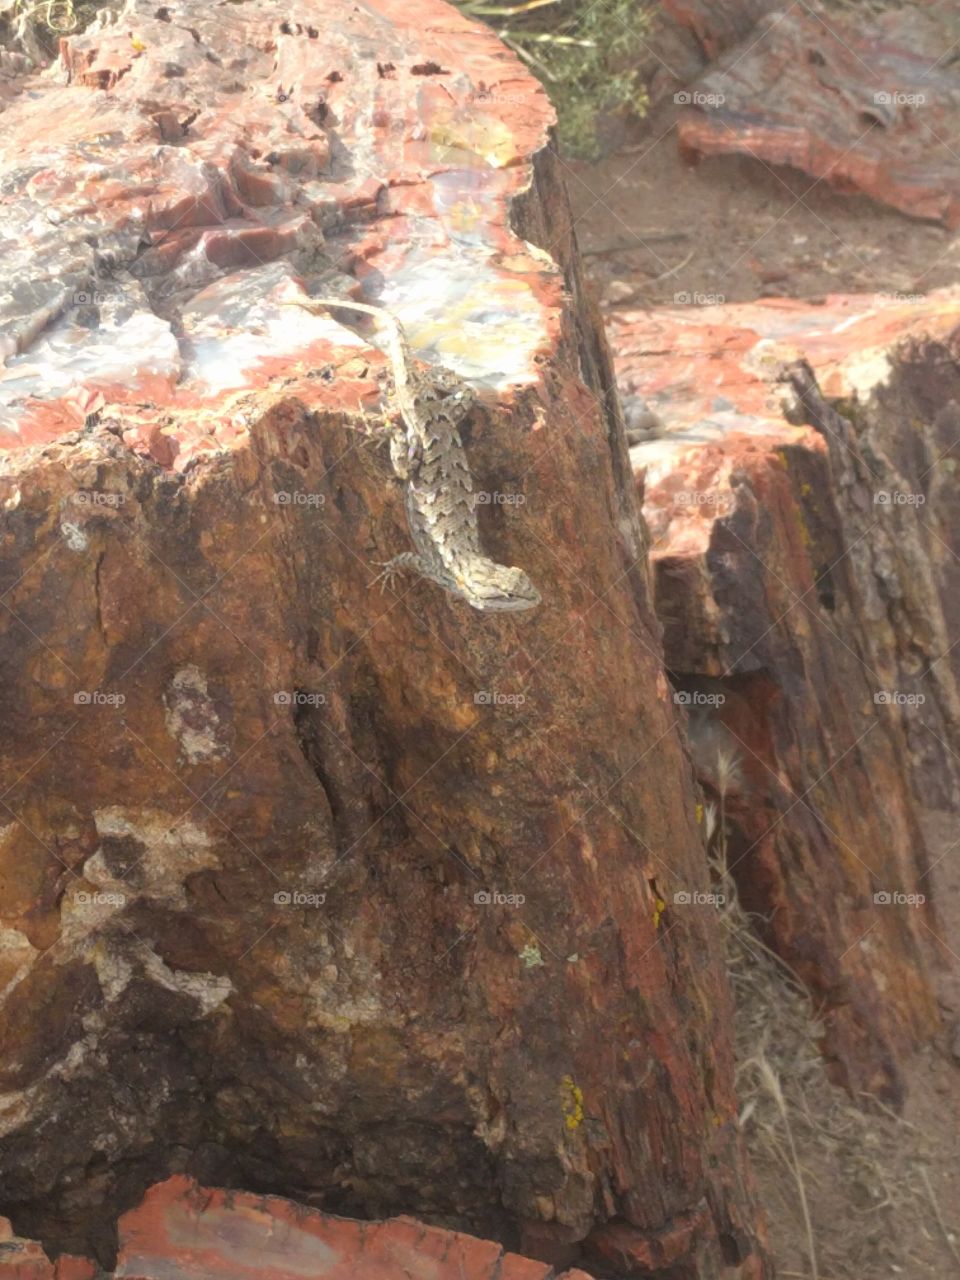 Lizard on petrified wood, AZ